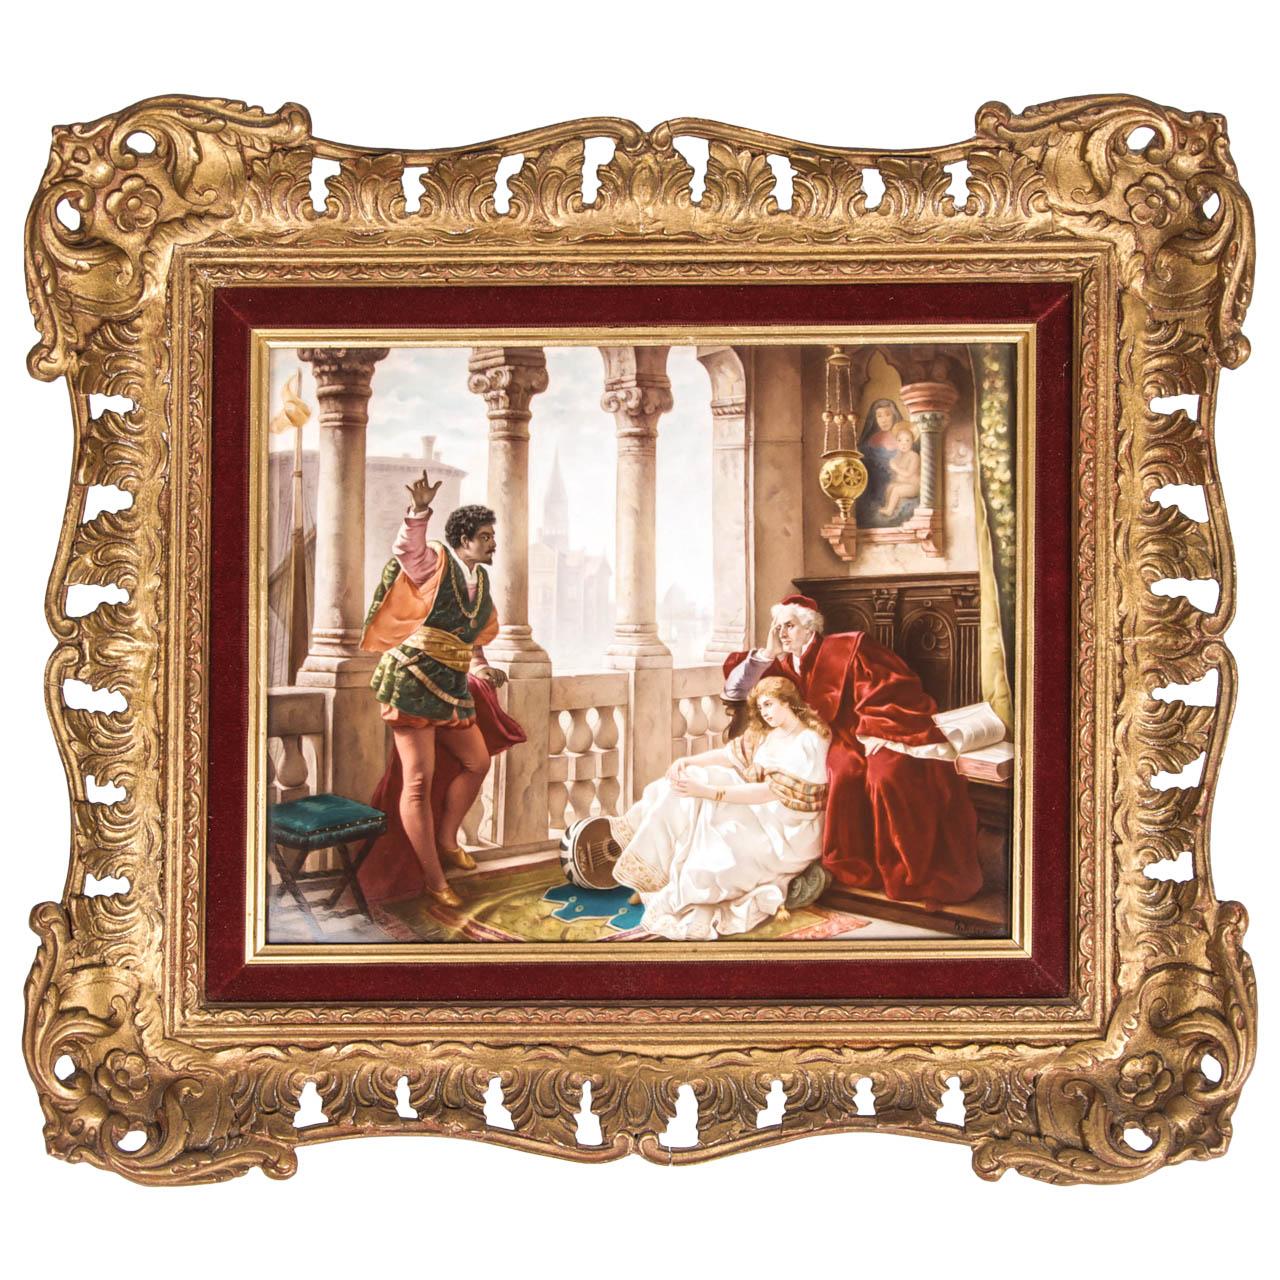 Plaque en porcelaine de KPM représentant une scène de la pièce Othello de Shakespeare, d'après le tableau de Carl Ludwig Friedrich Becker (allemand, 1820-1900). 

Signé 